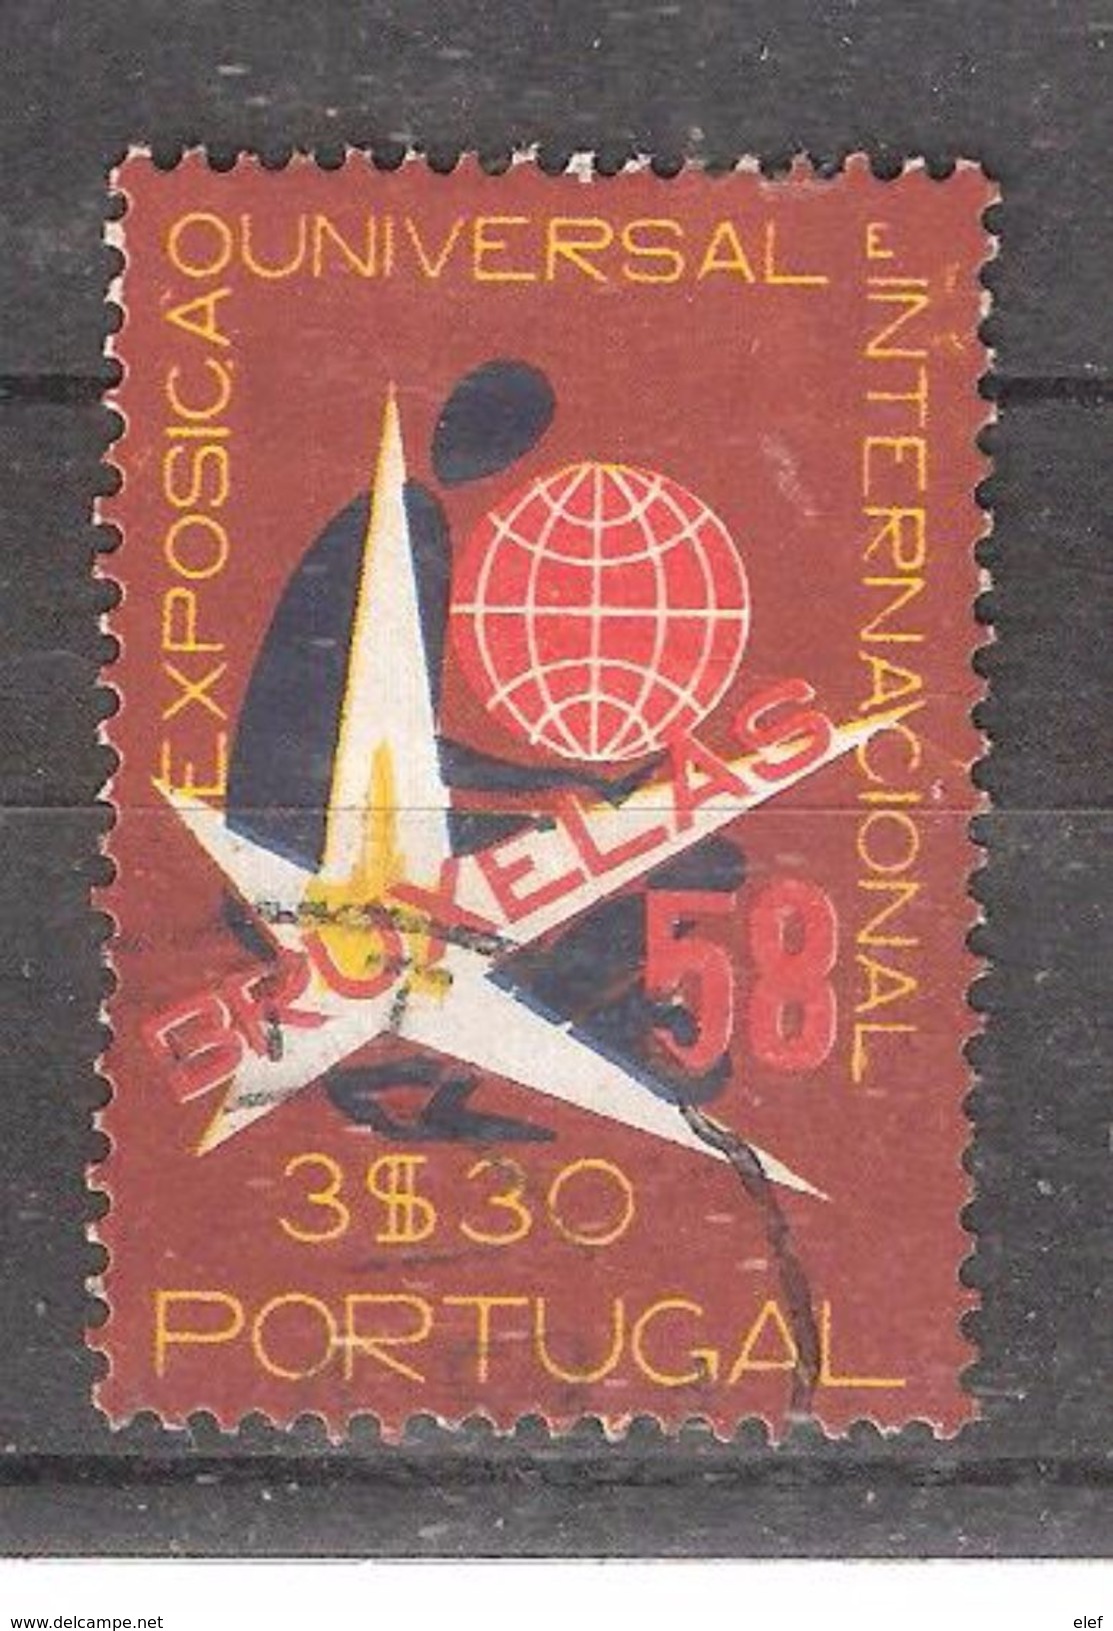 PORTUGAL, 1958, Yvert N° 844, Exposition Universelle Bruxelles 58 , 3 E 30 , Obl, TB - 1958 – Bruxelles (Belgique)